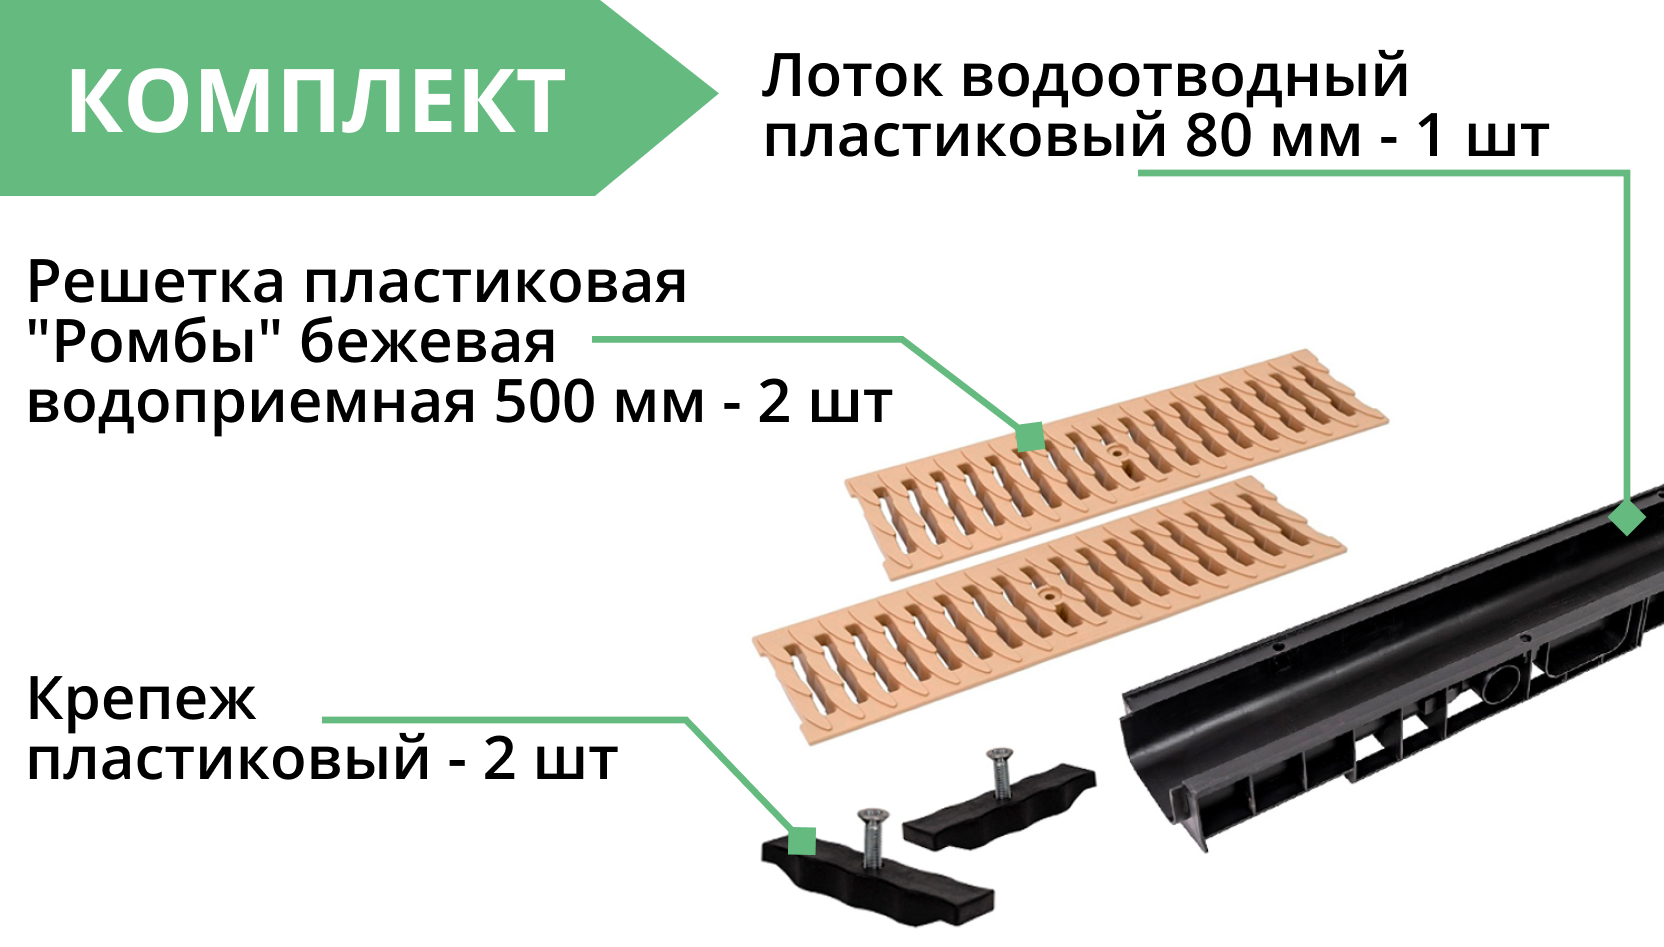 Комплект: Лоток Европартнер 80 мм с пластиковыми решетками бежевыми "Ромбы" 1 метр 3